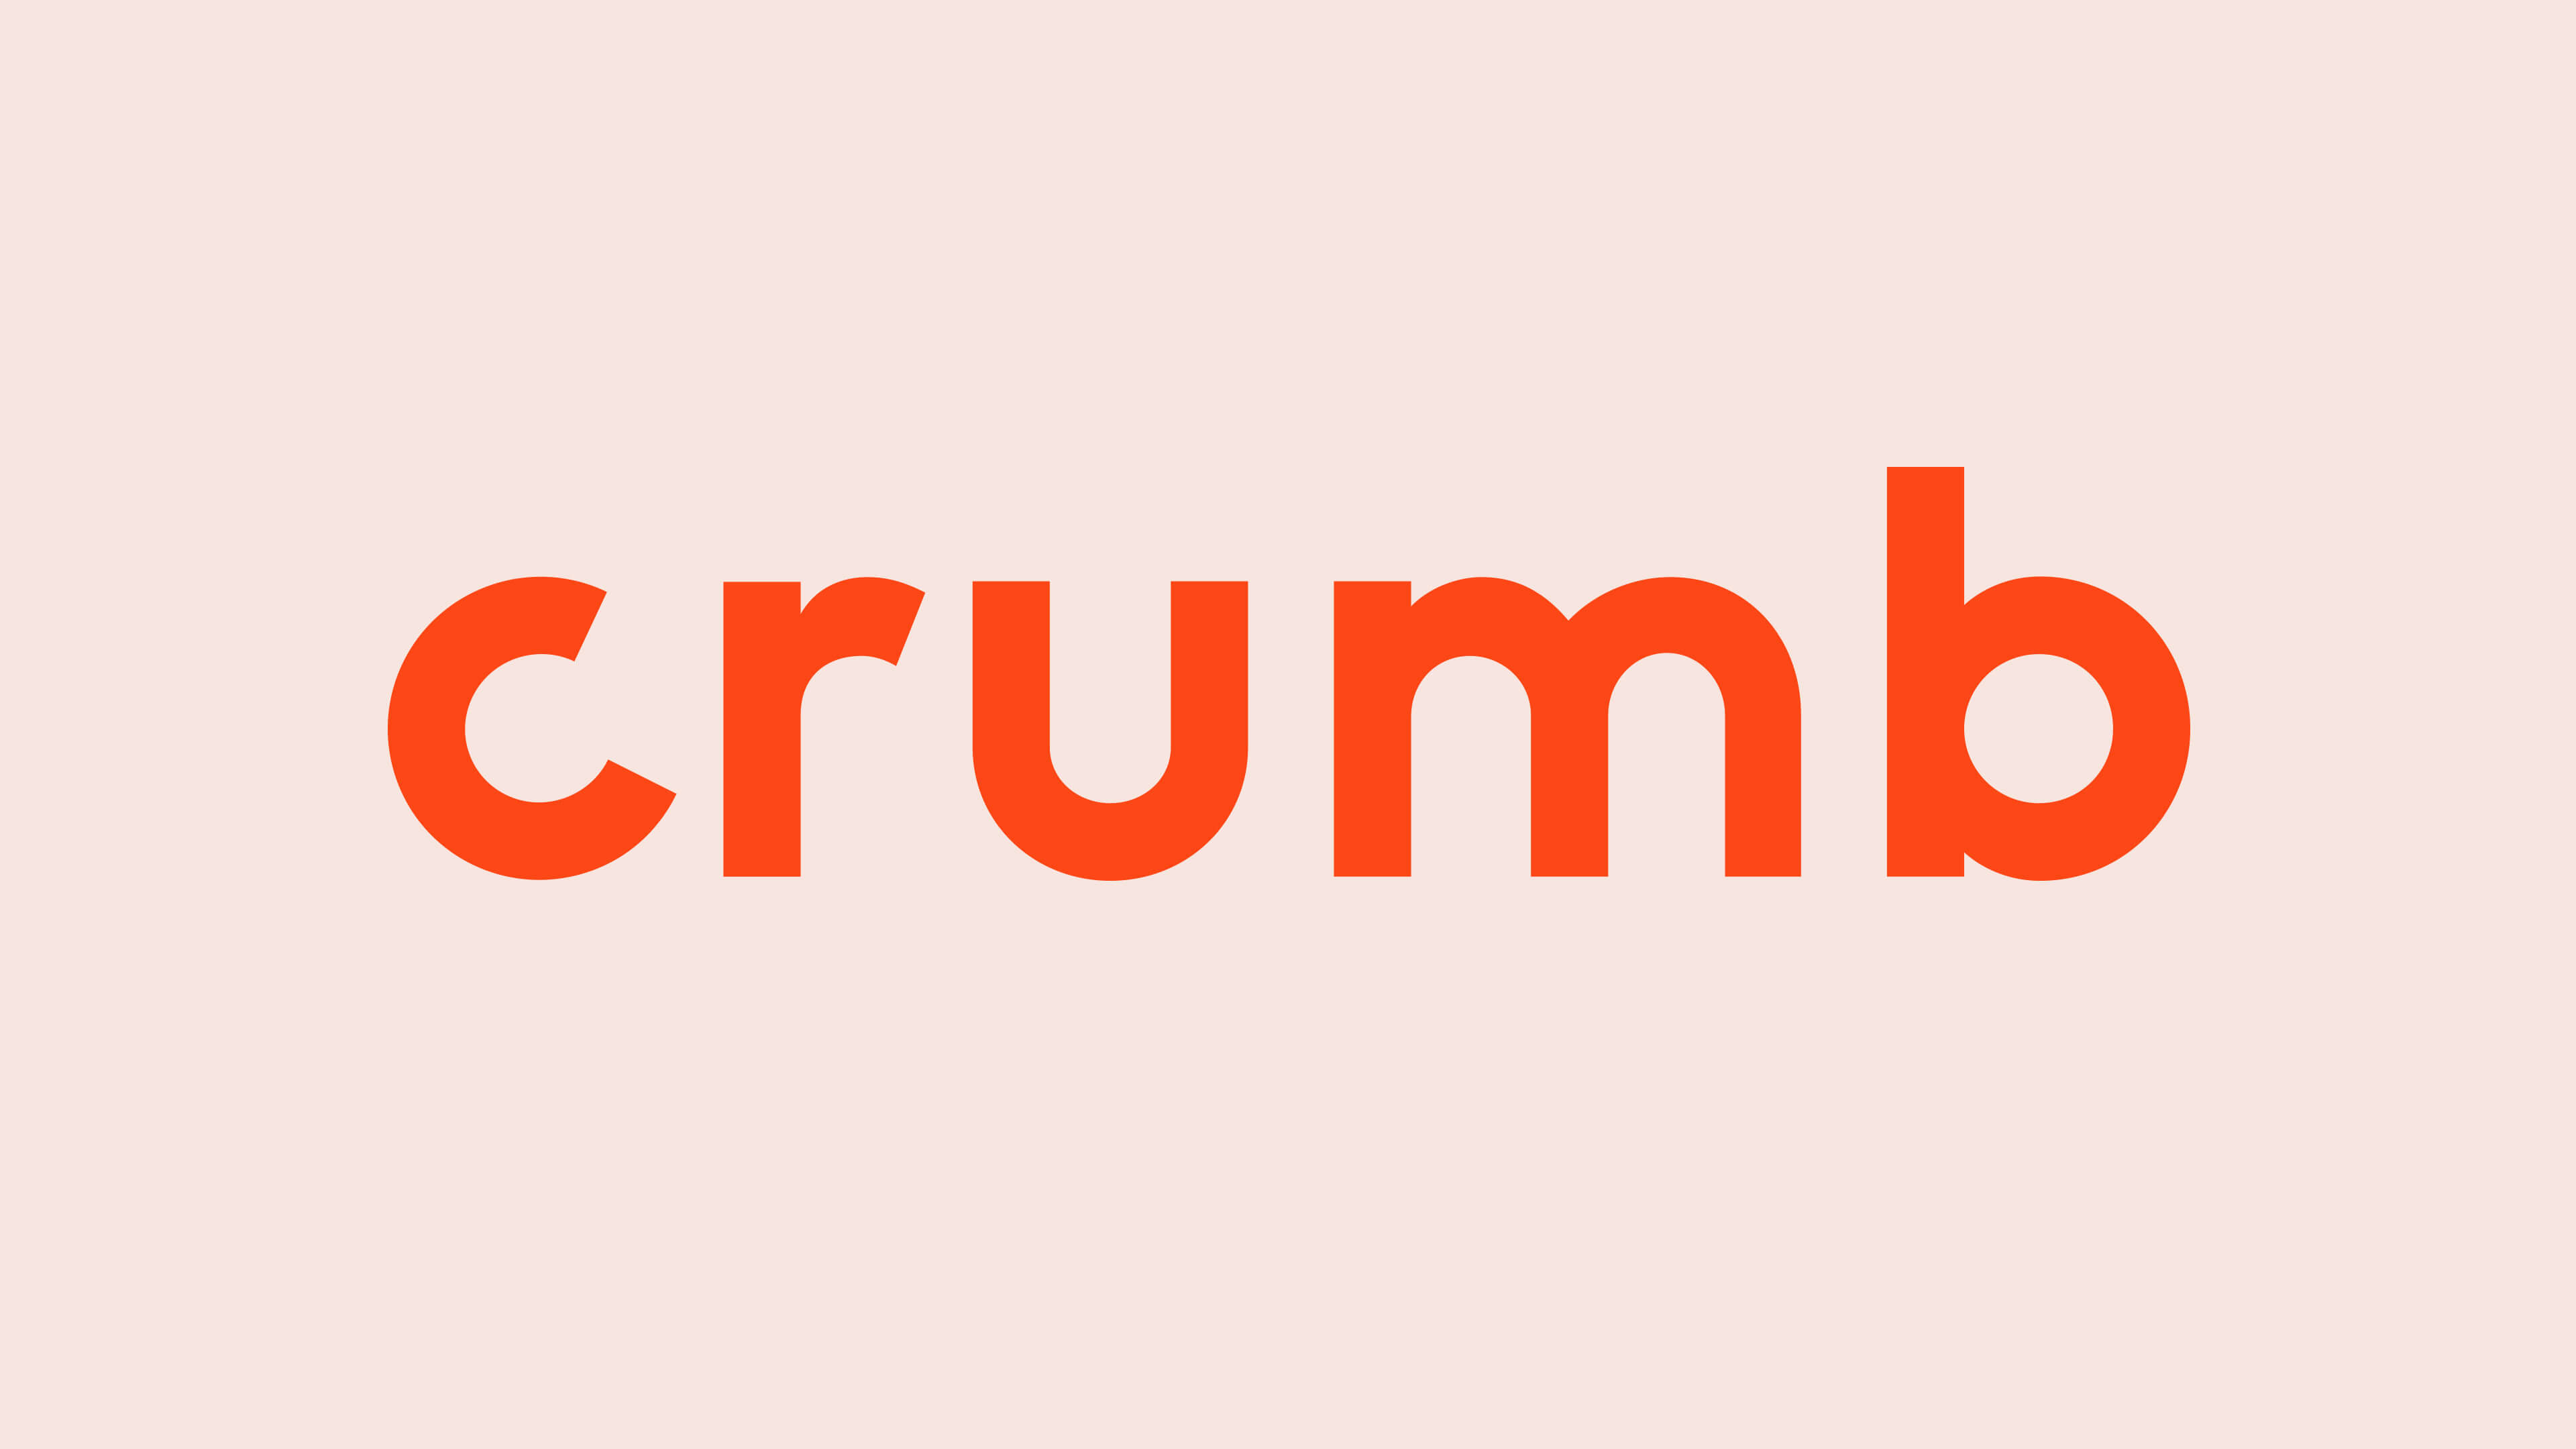 Crumb: Crumb